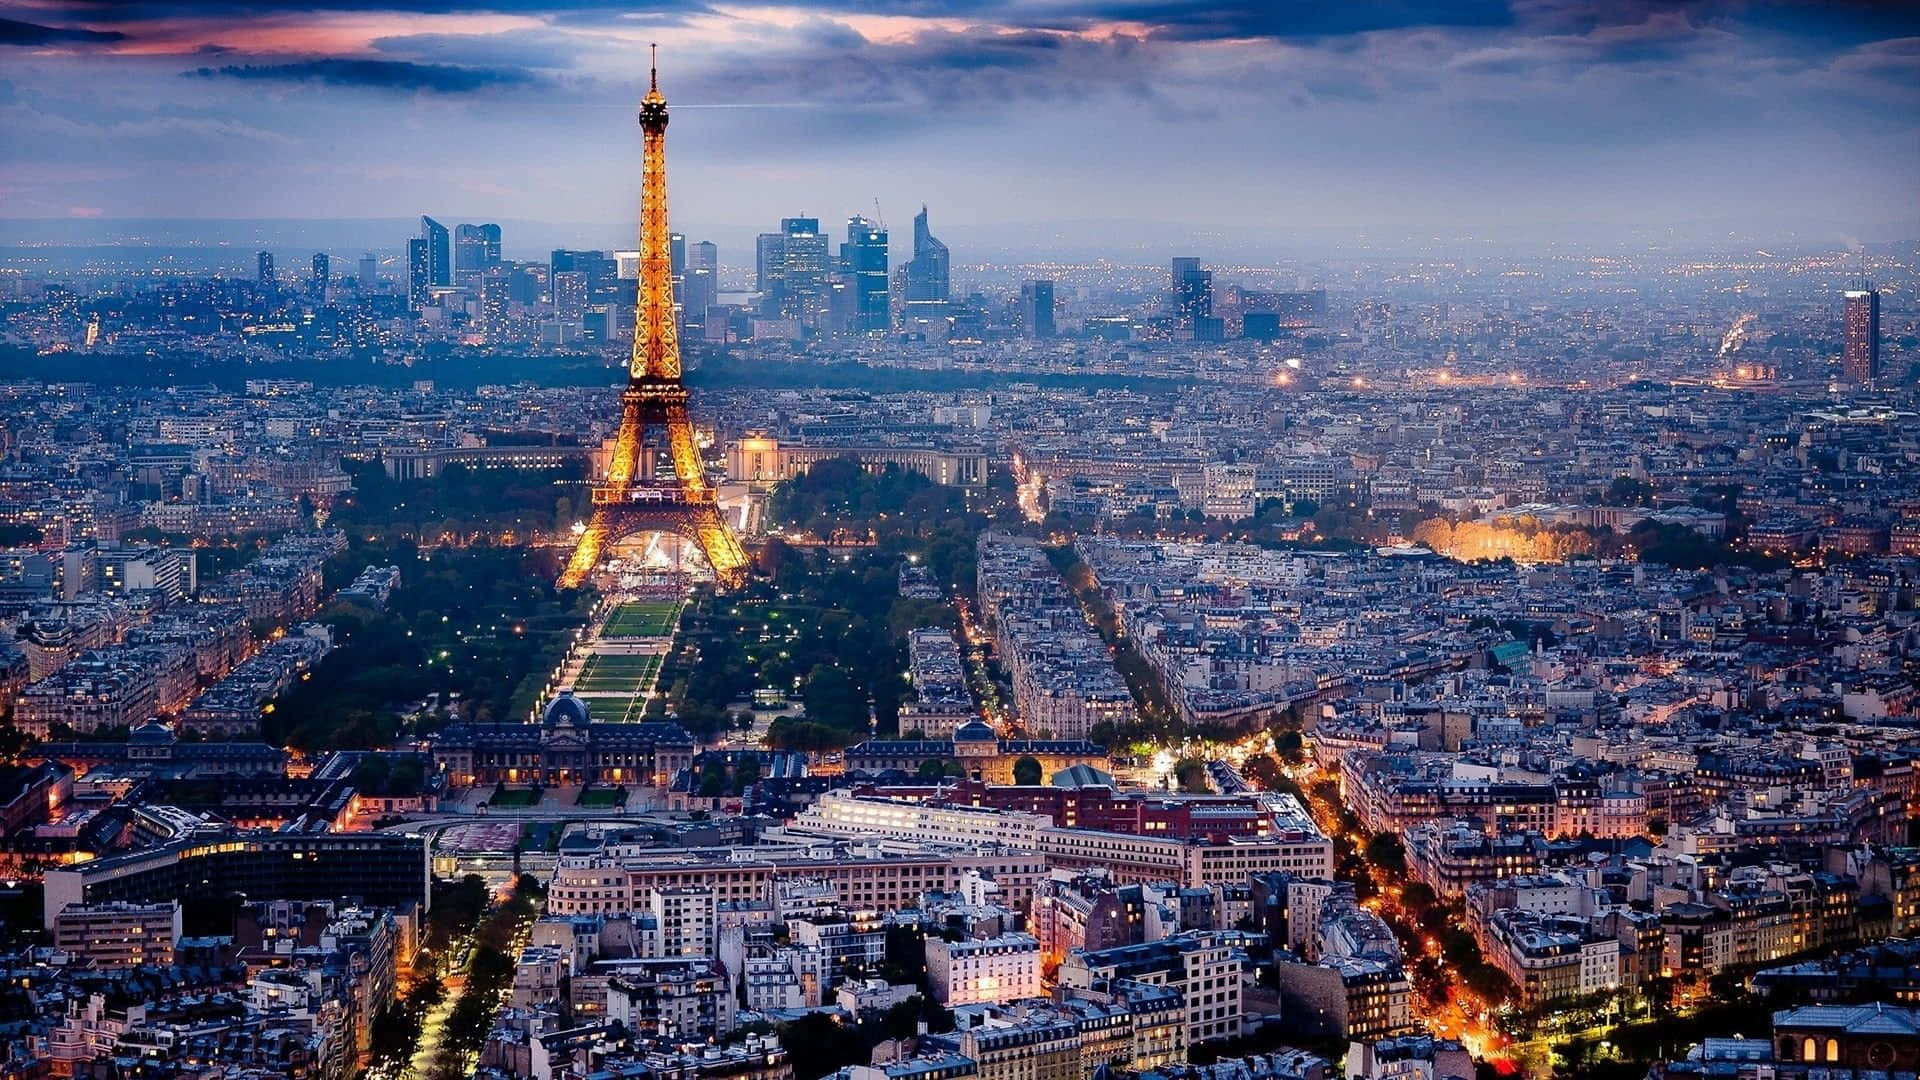 Sintaa Atmosfera Romântica De Paris Com Vistas Espetaculares Da Cidade Em Seu Papel De Parede De Computador Ou Celular. Papel de Parede